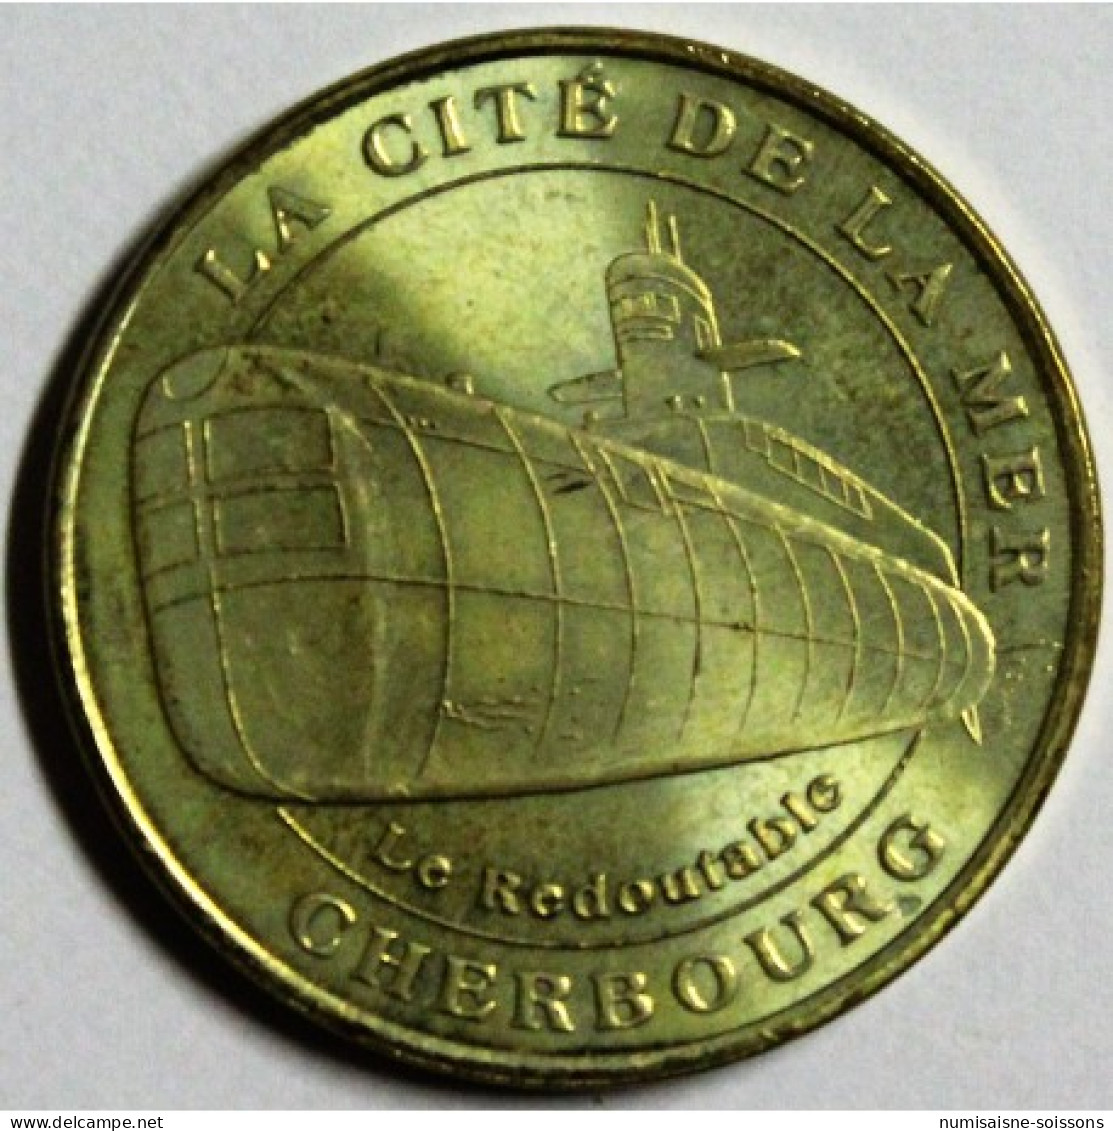 50 - CHERBOURG OCTEVILLE - LA CITE DE LA MER - LE REDOUTABLE - FLAN BABORD - MDP - 2007 - 2007